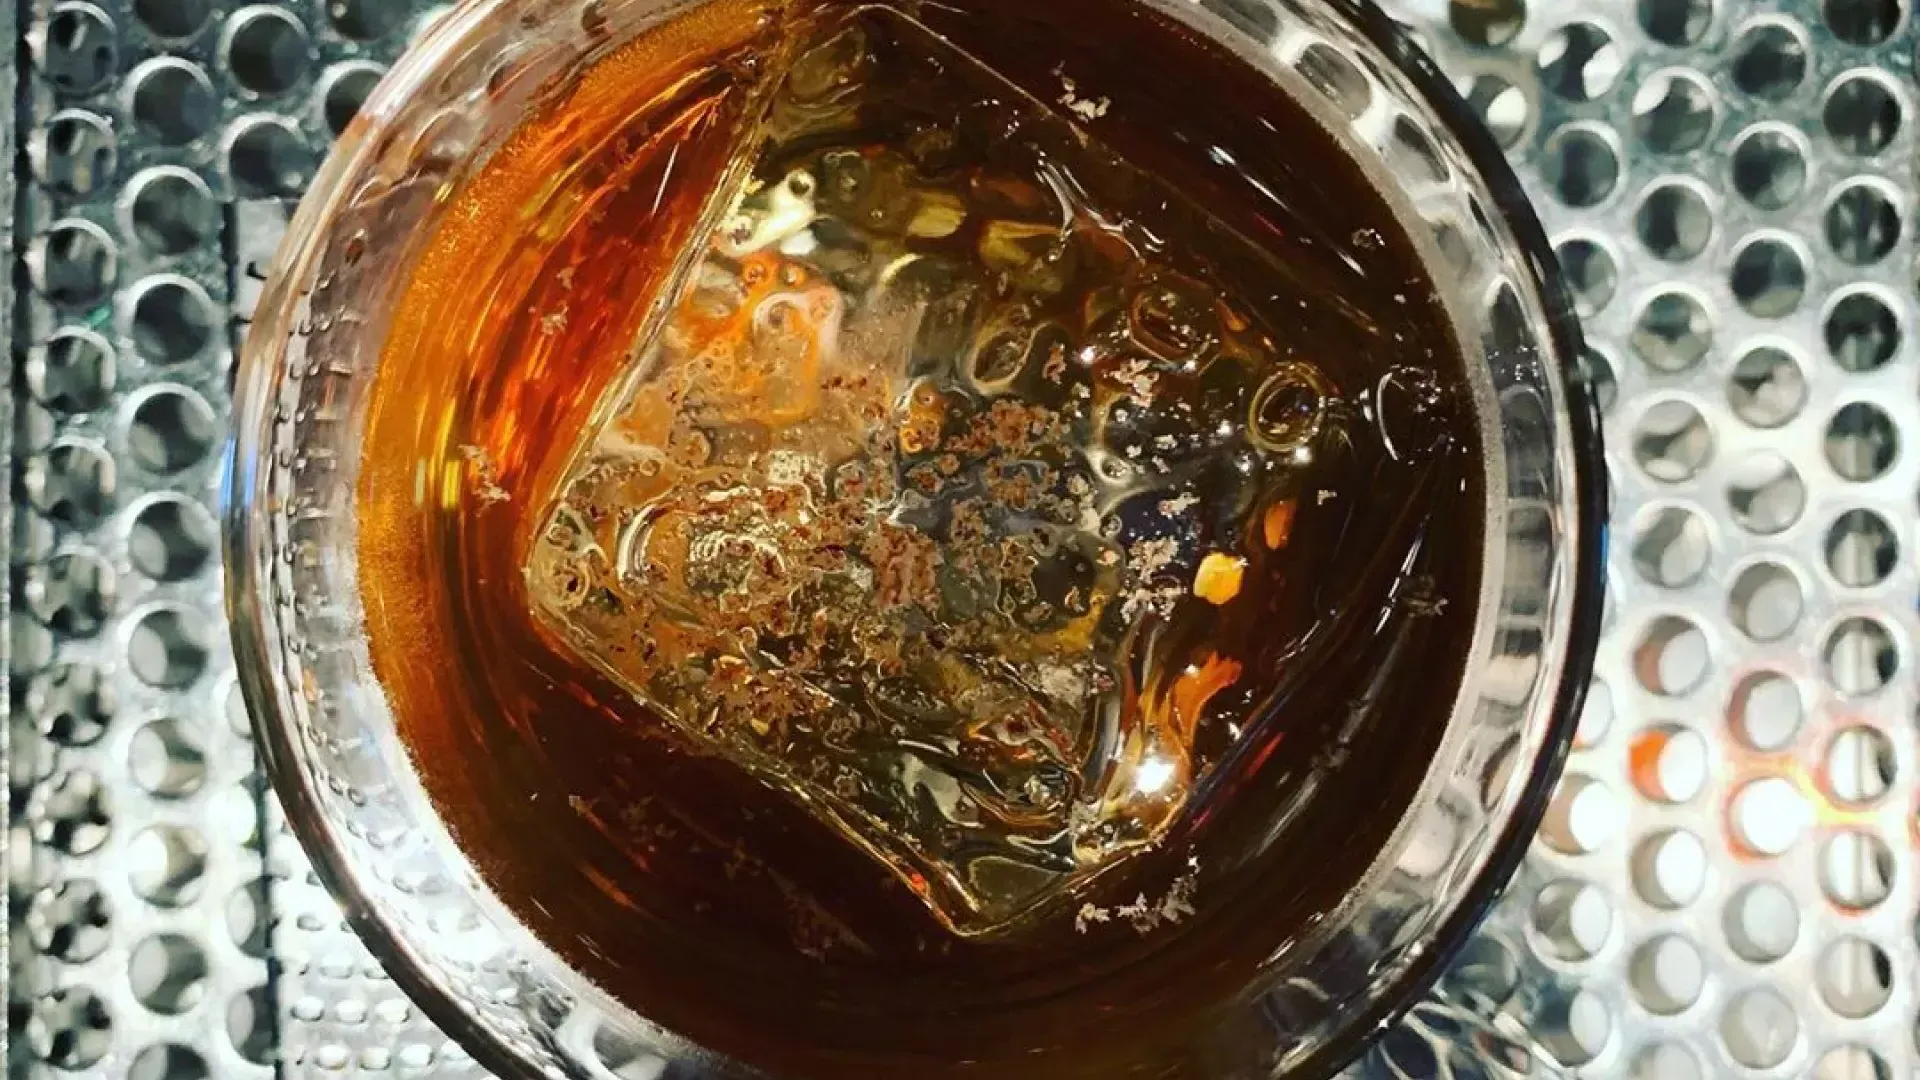 贝博体彩app的第三铁路酒吧提供威士忌鸡尾酒。.